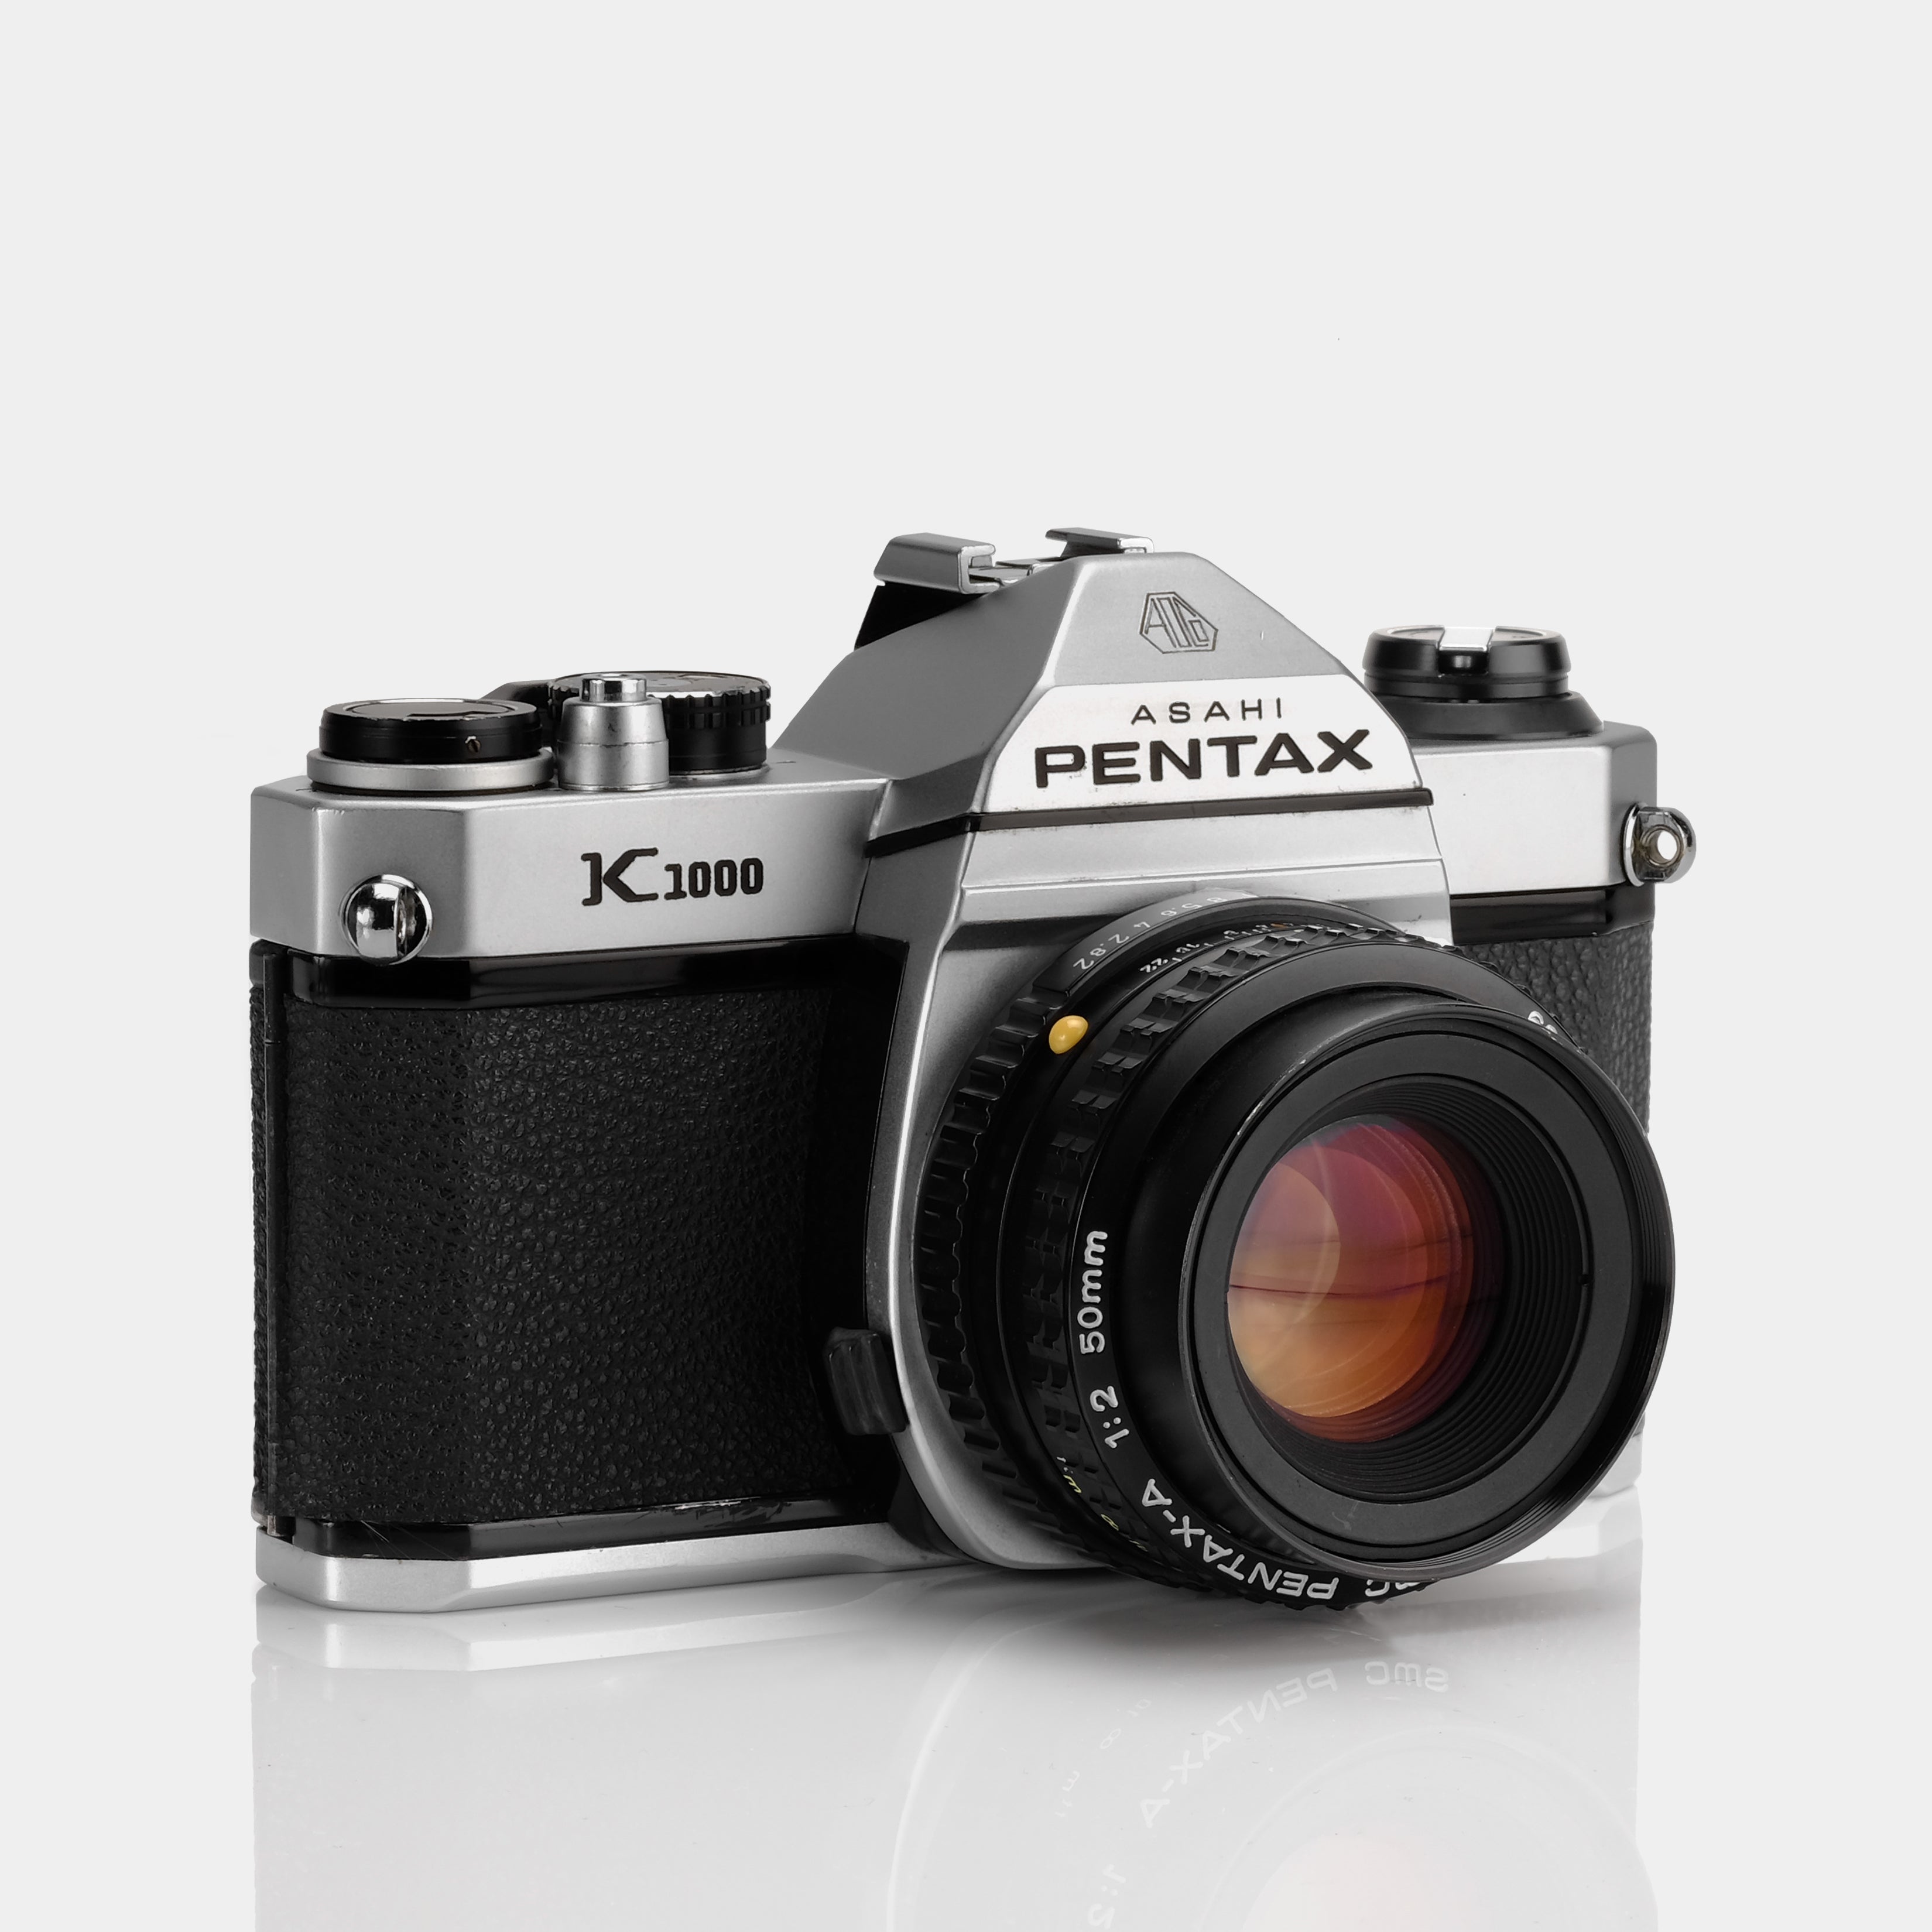 Pentax K1000 35mm SLR Film Camera